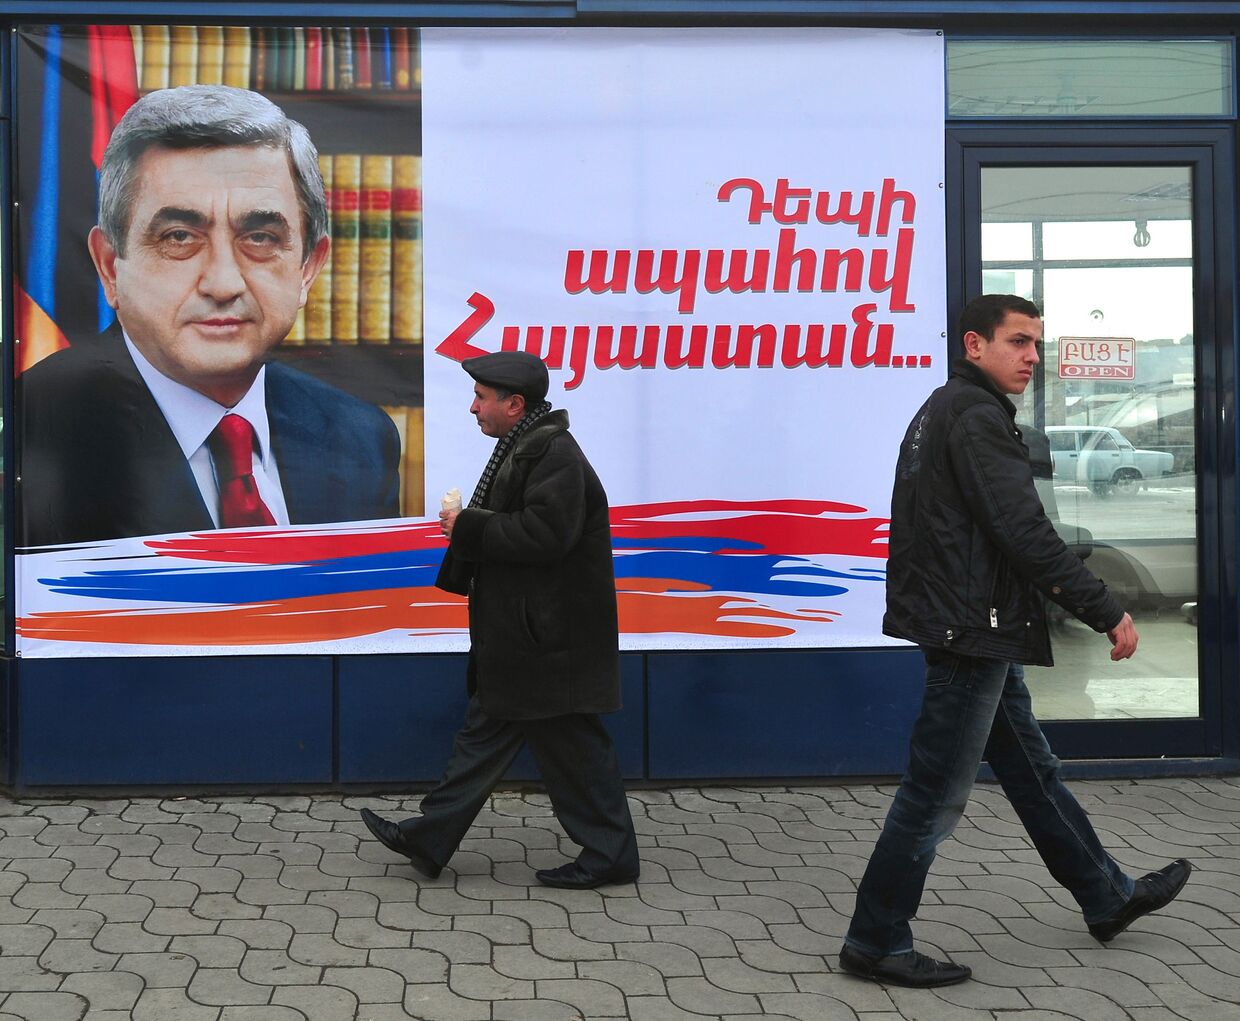 Плакат с изображением президента Армении Сержа Сарксяна